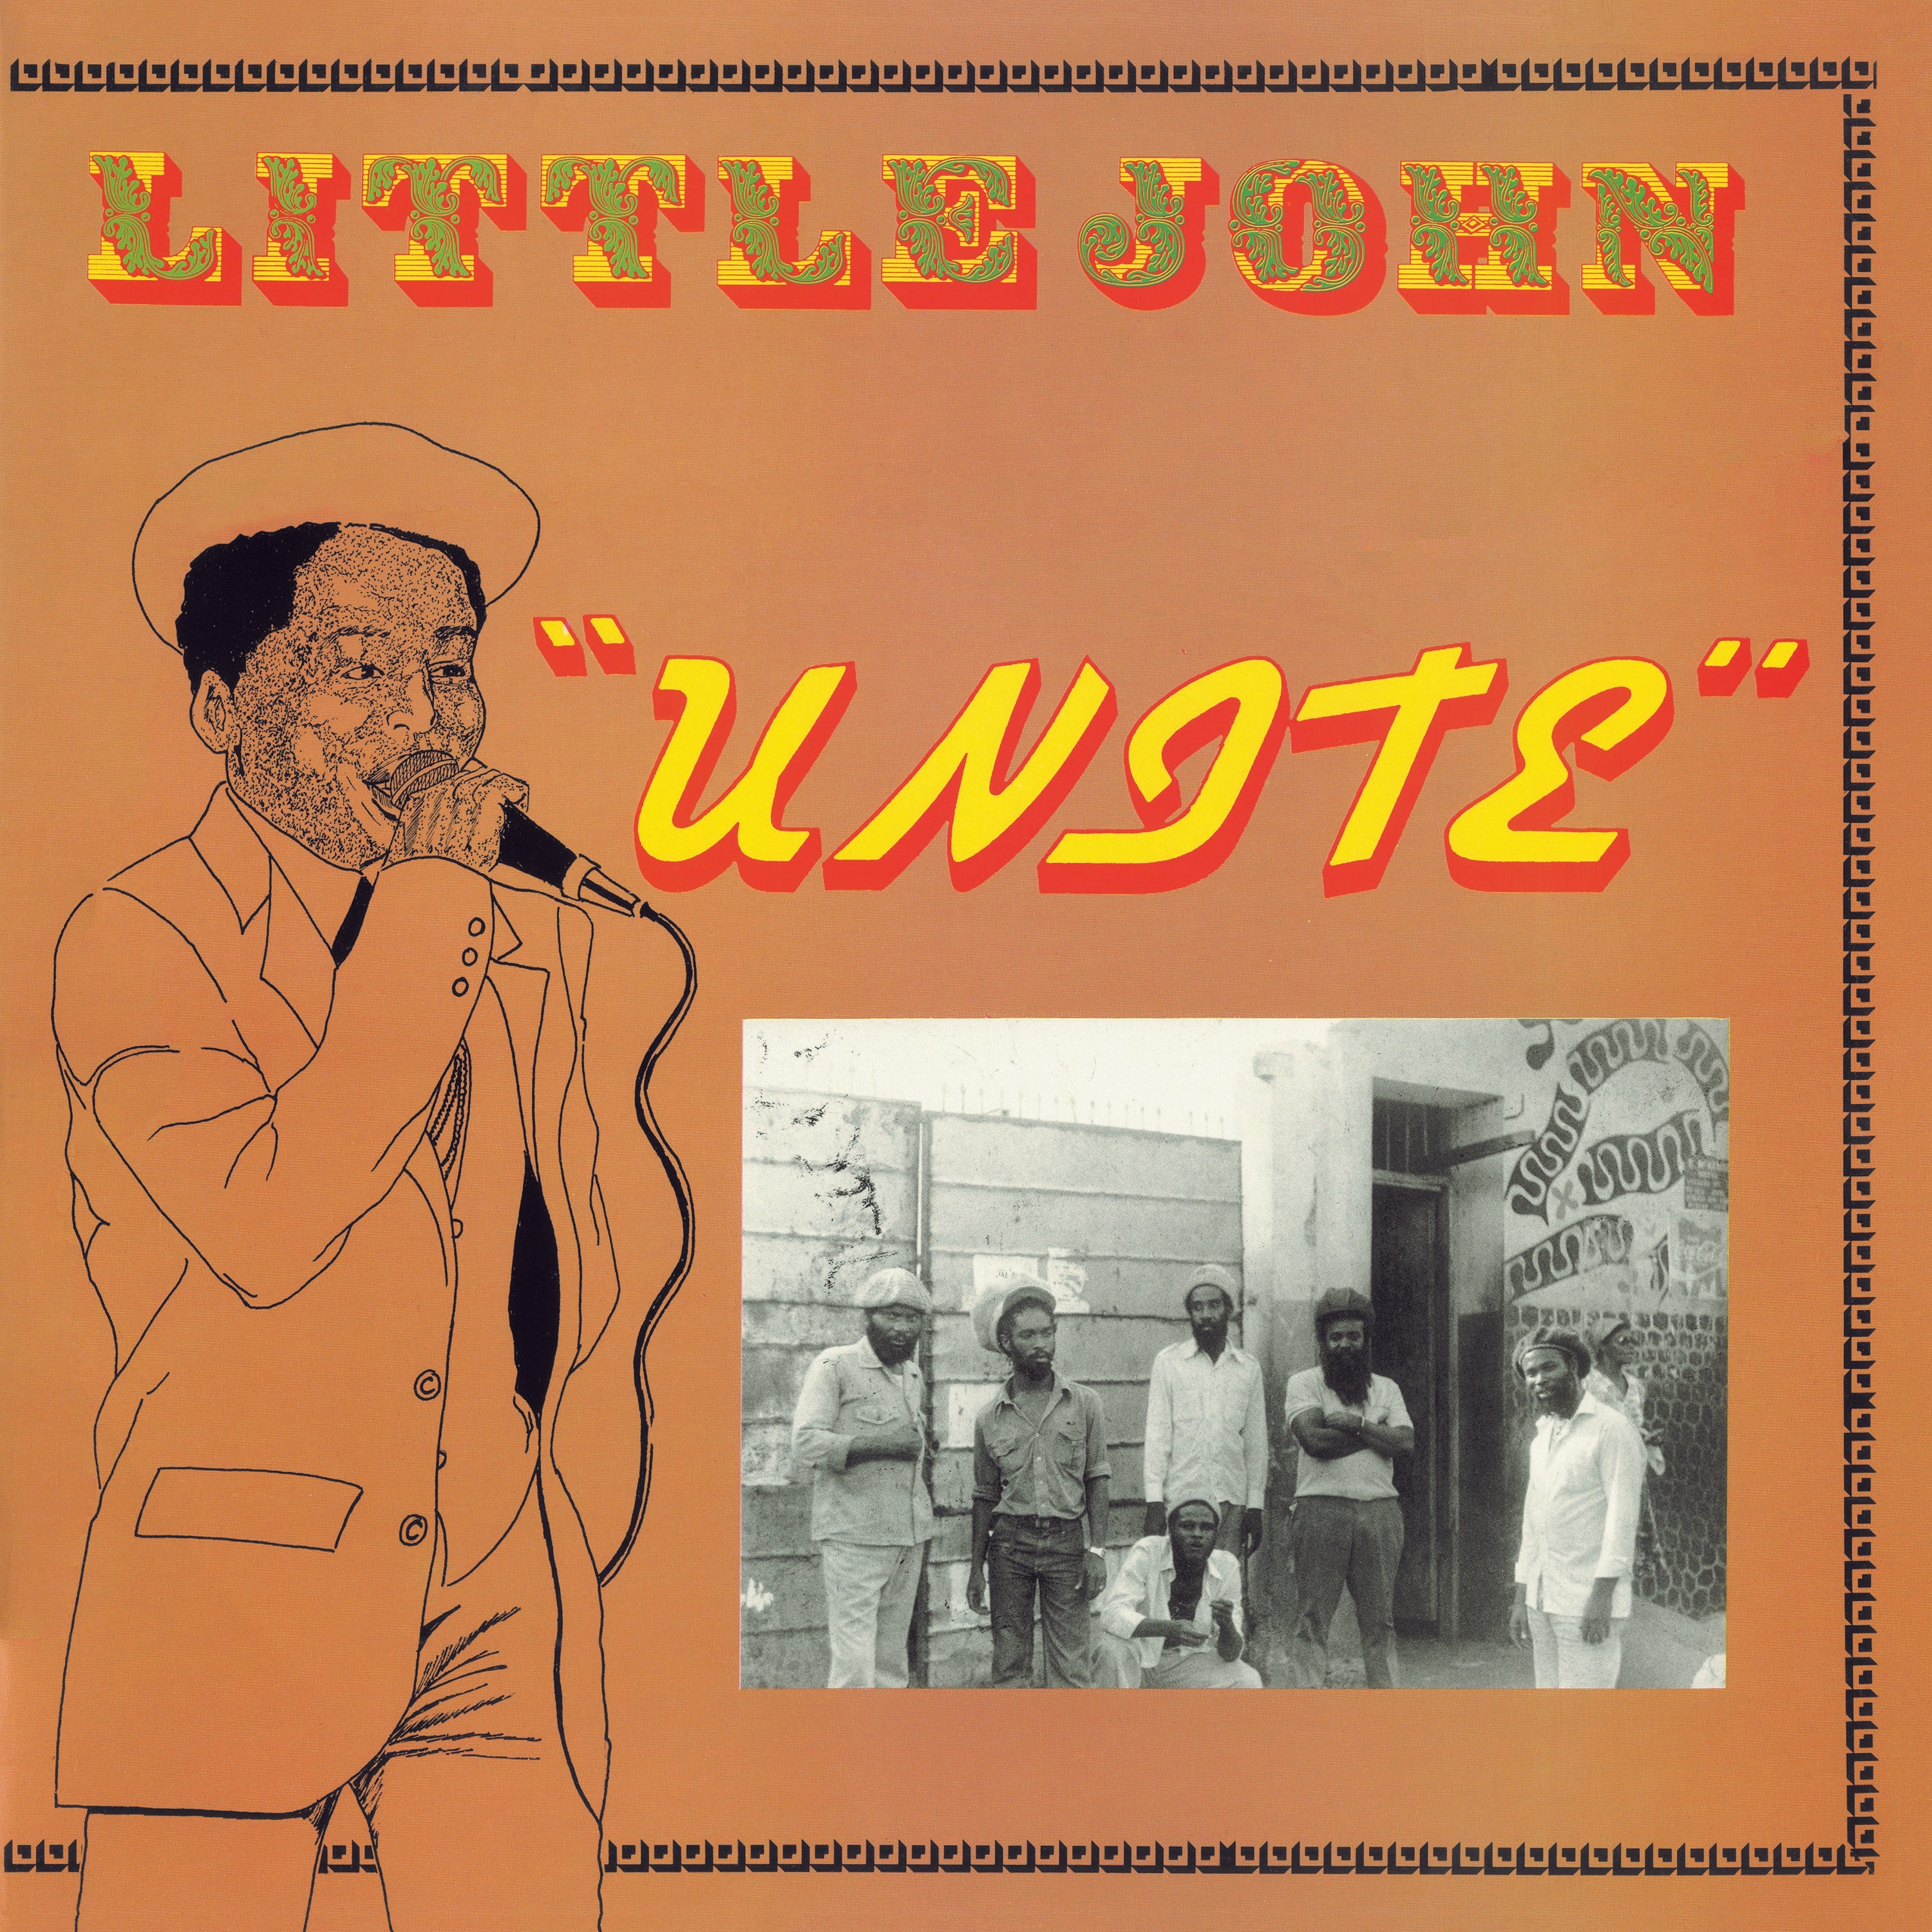 Little John - Unite - 180 Gram Vinyl LP